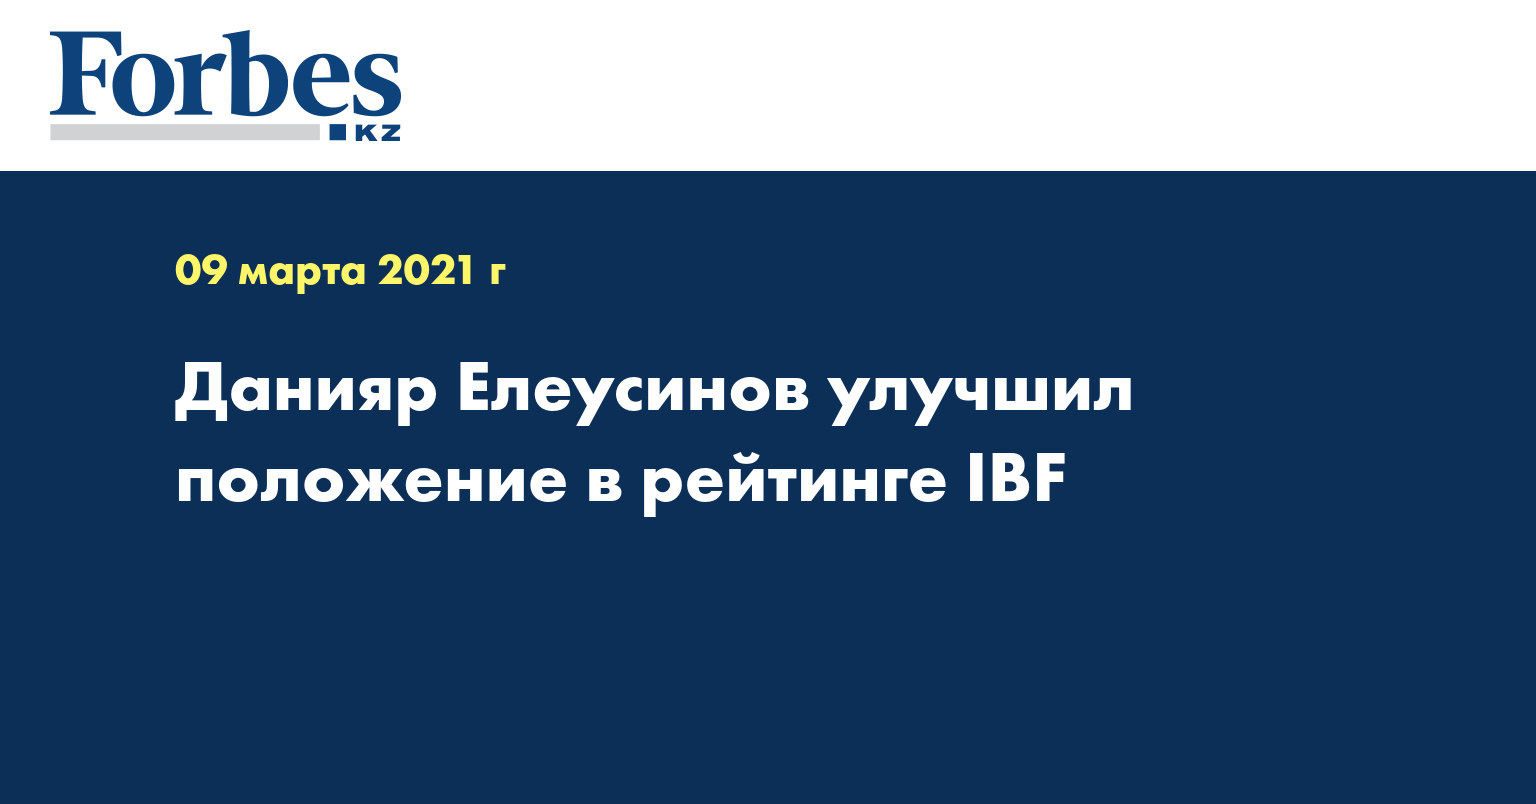 Данияр Елеусинов улучшил положение в рейтинге IBF